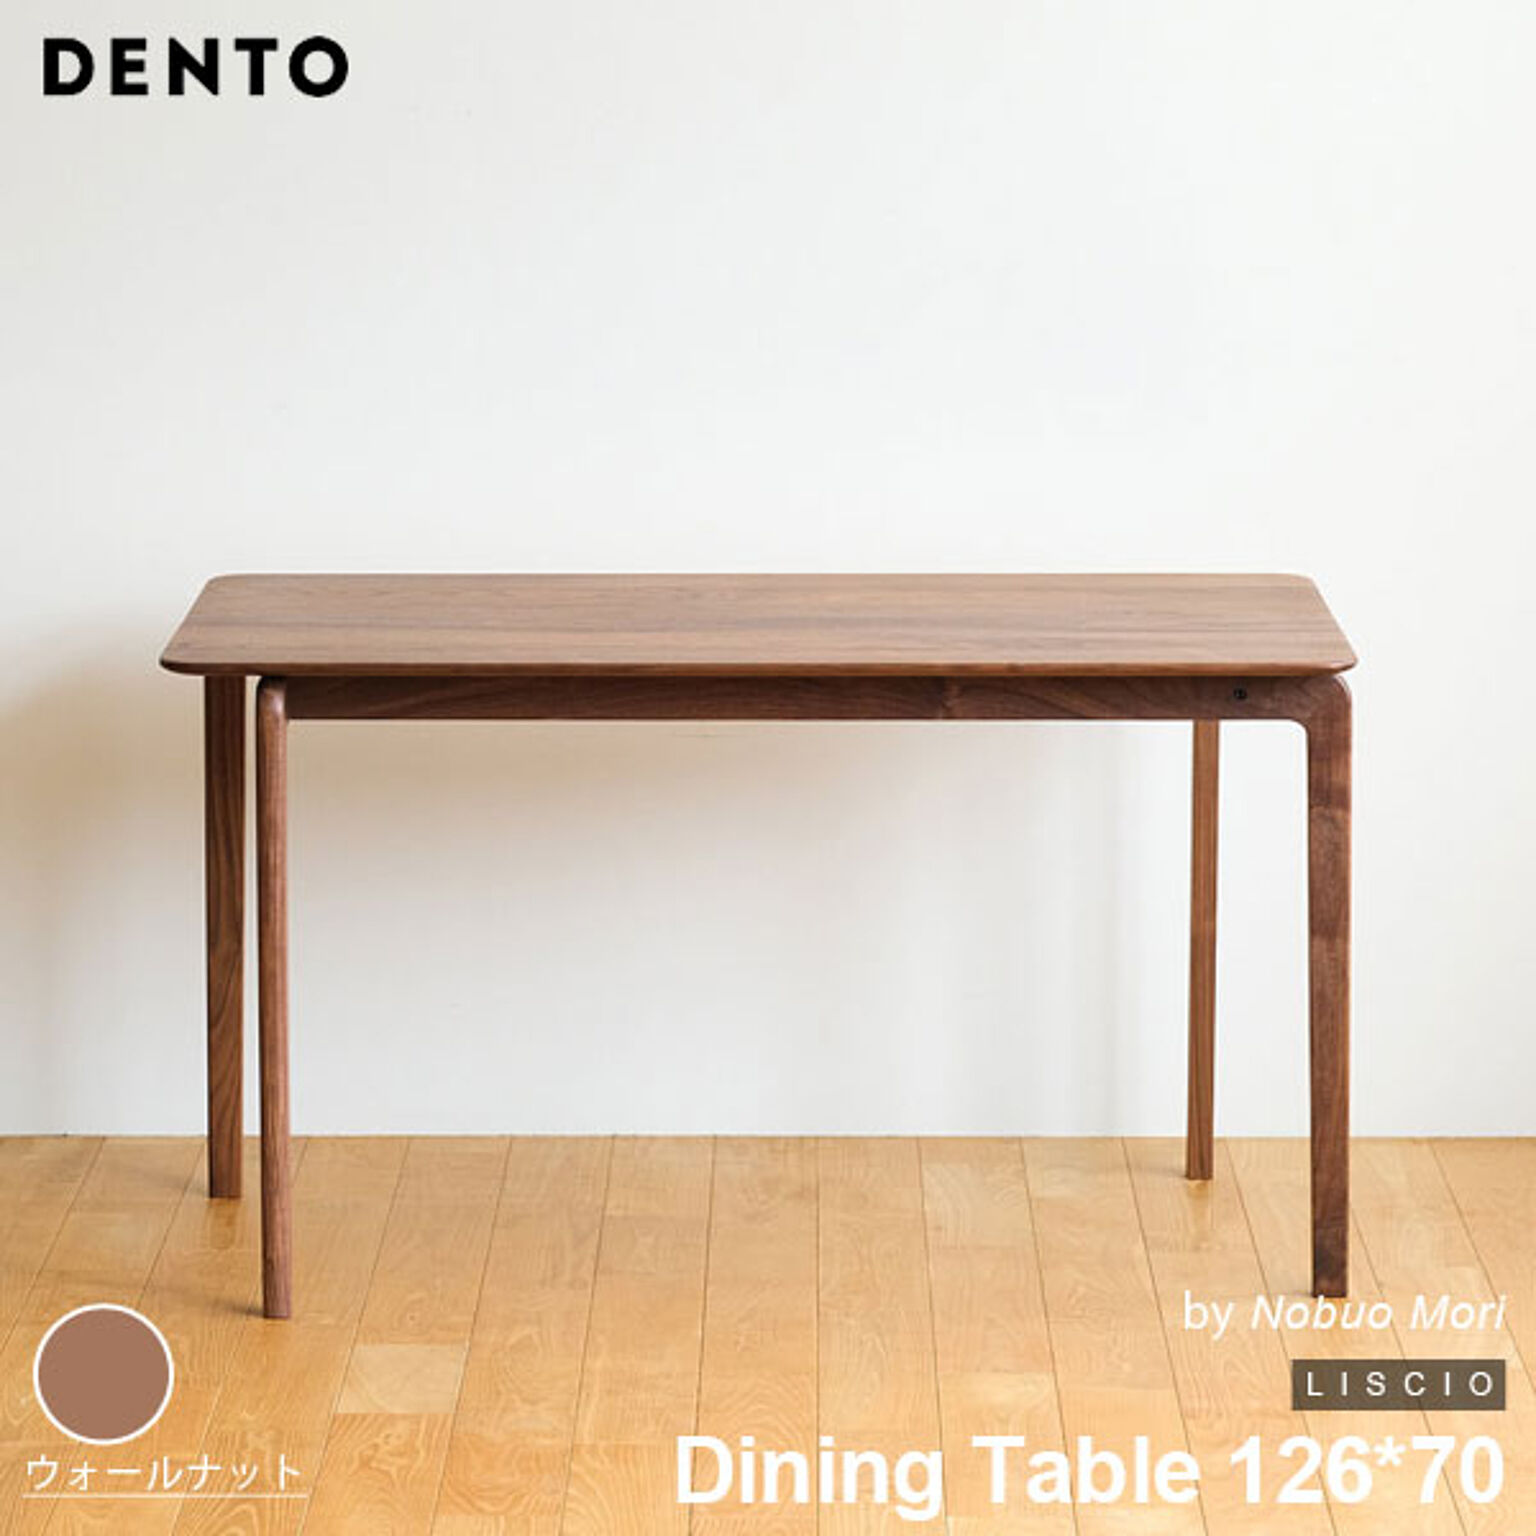 ダイニングテーブル 木製 長方形 4人用 LISCIO Dining Table 126*70 126cm リッショ 木製 無垢 スタイリッシュ 北欧 ダイニング 日本製 